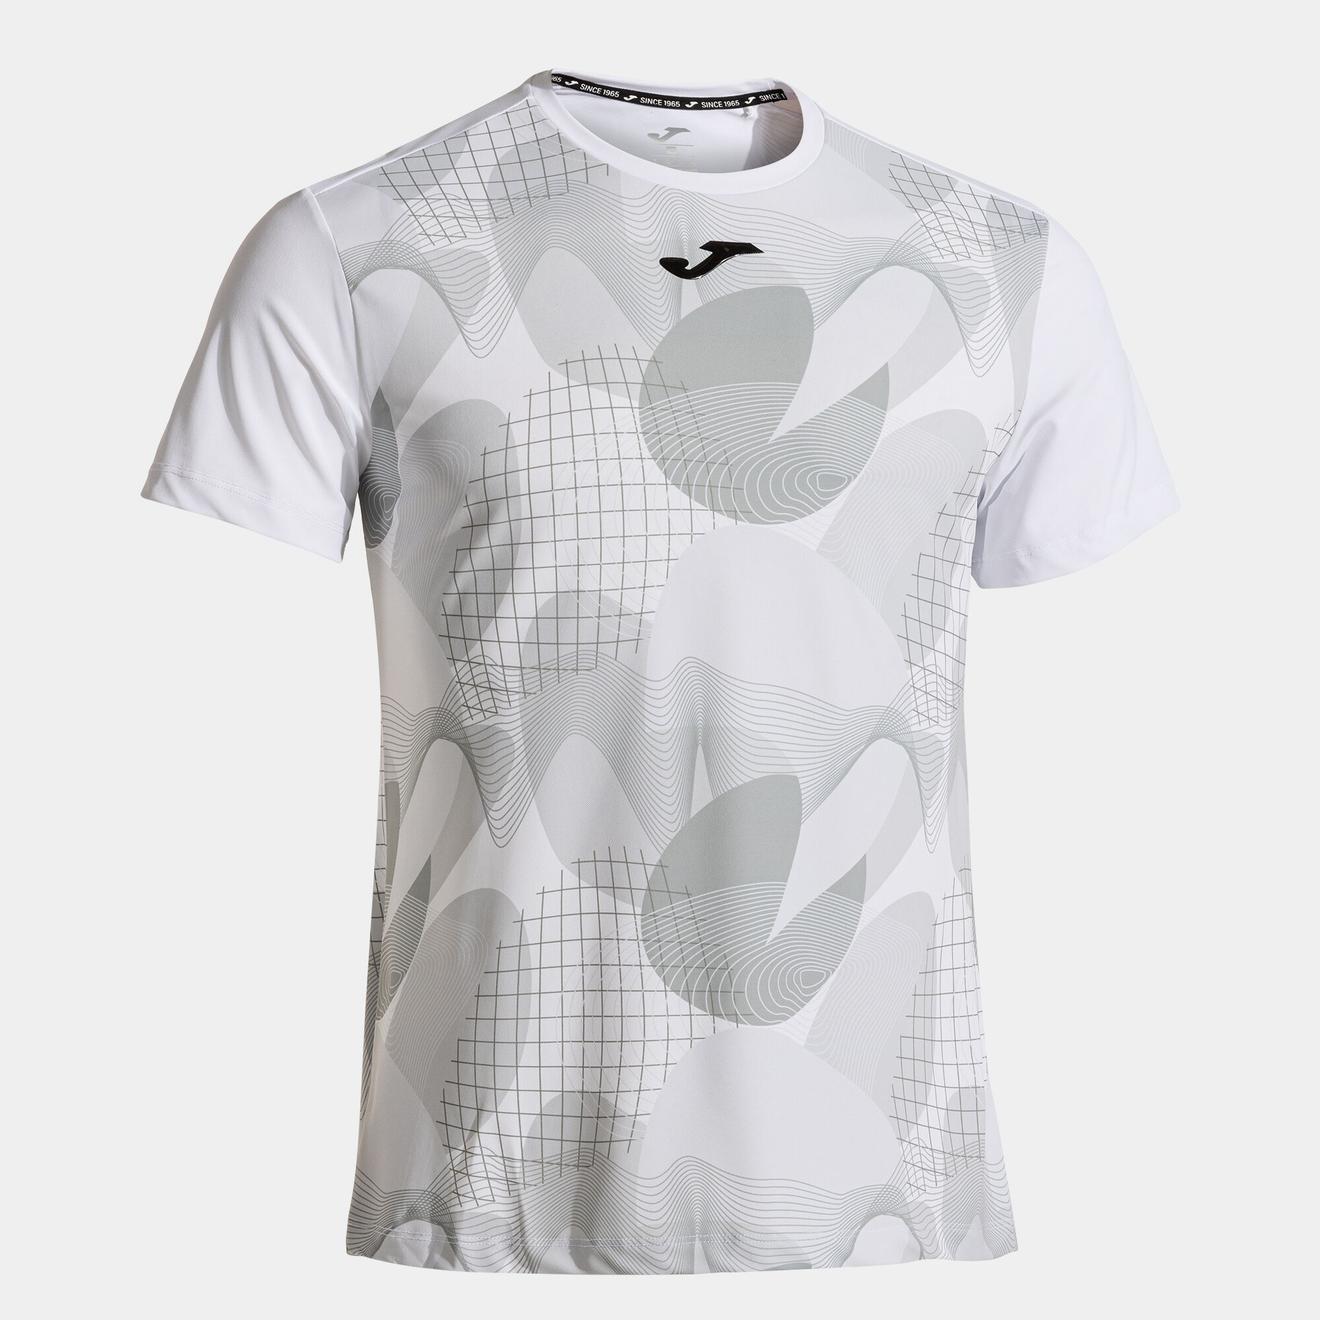 Oferta de Camiseta manga corta hombre Challenge blanco por $23,14 en Joma